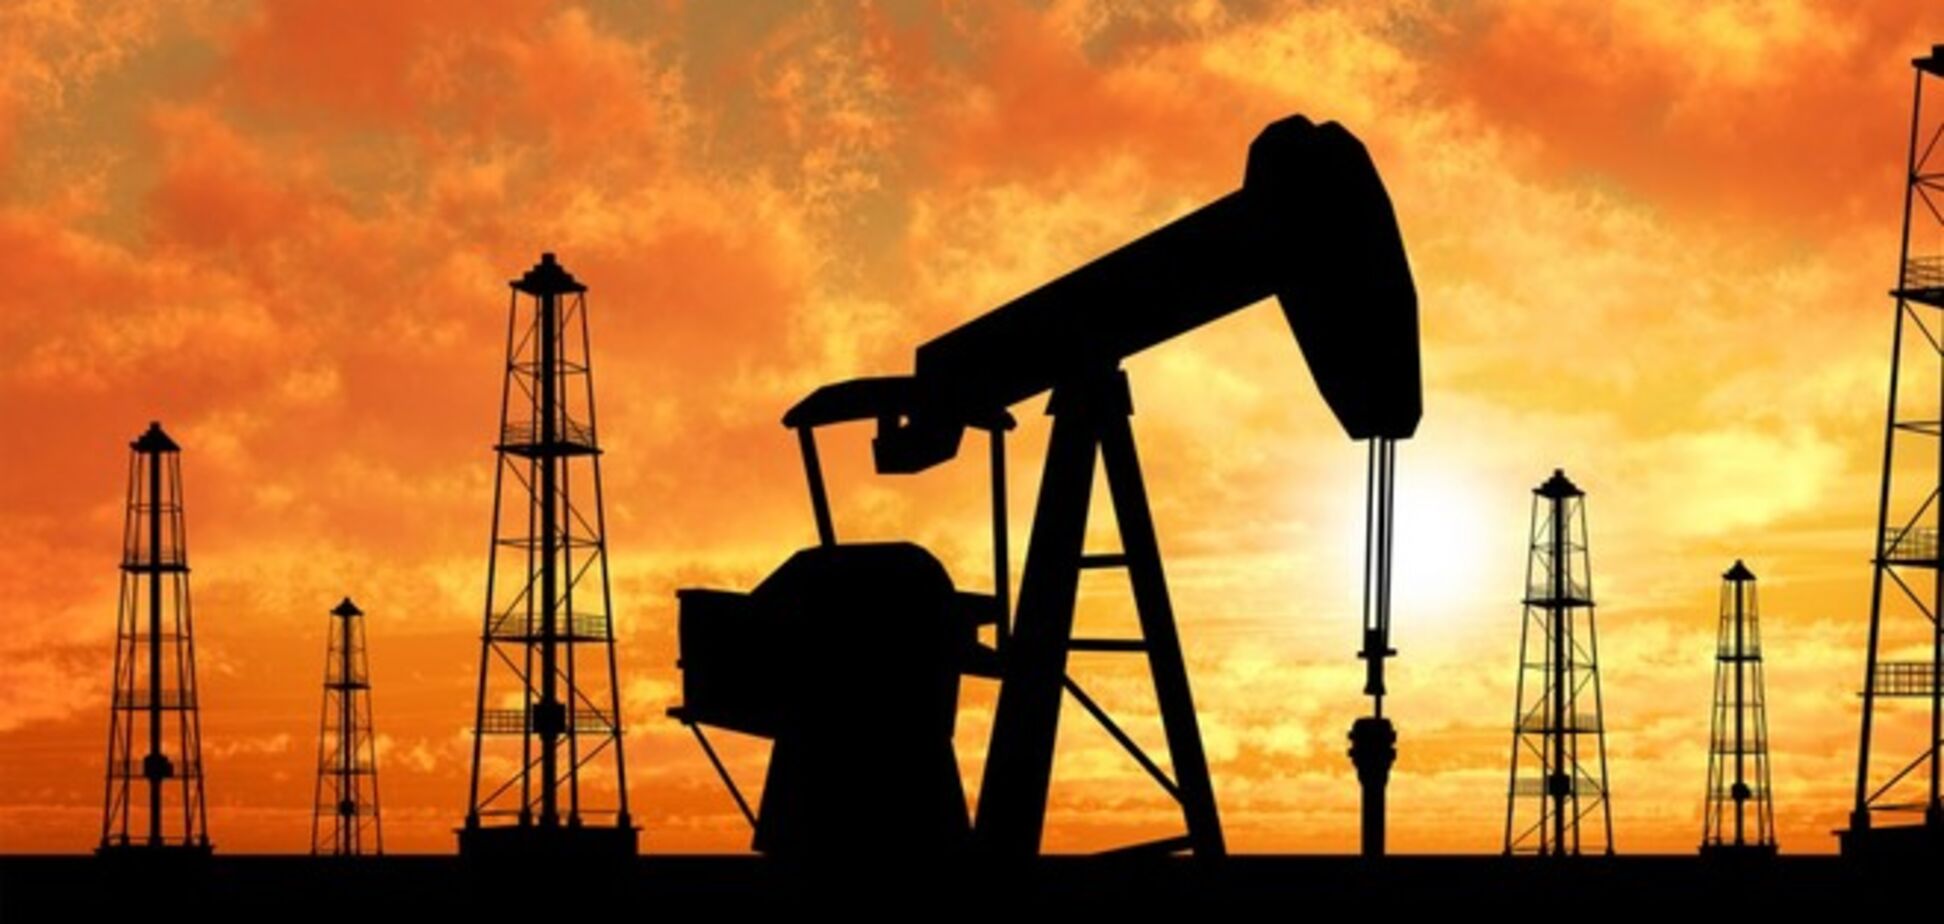 Бои на нефтяном фронте - впереди архиважная неделя